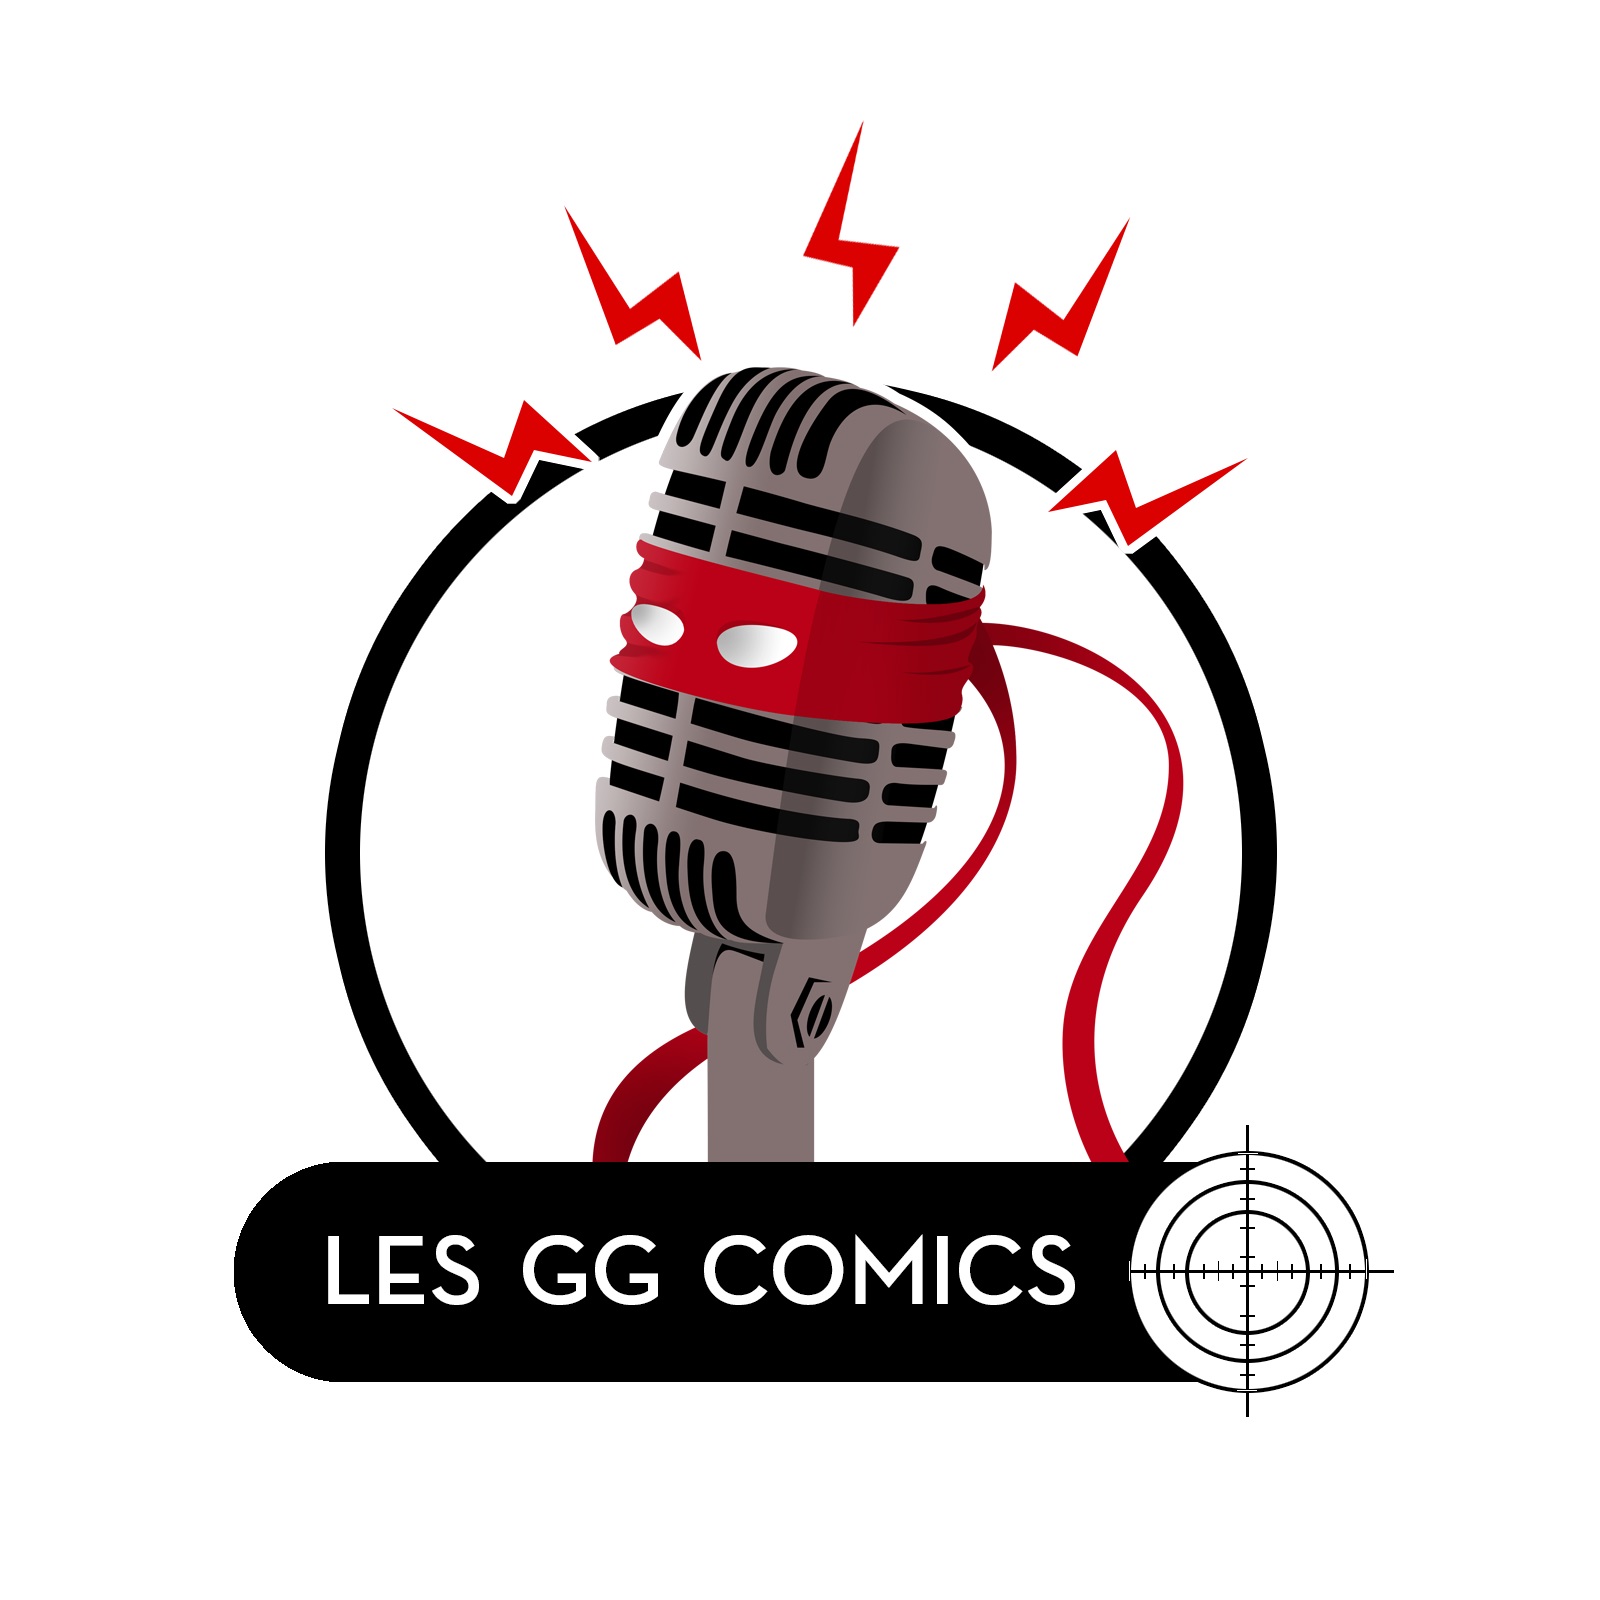 Les GG comics #058 : La maladie dans les comics